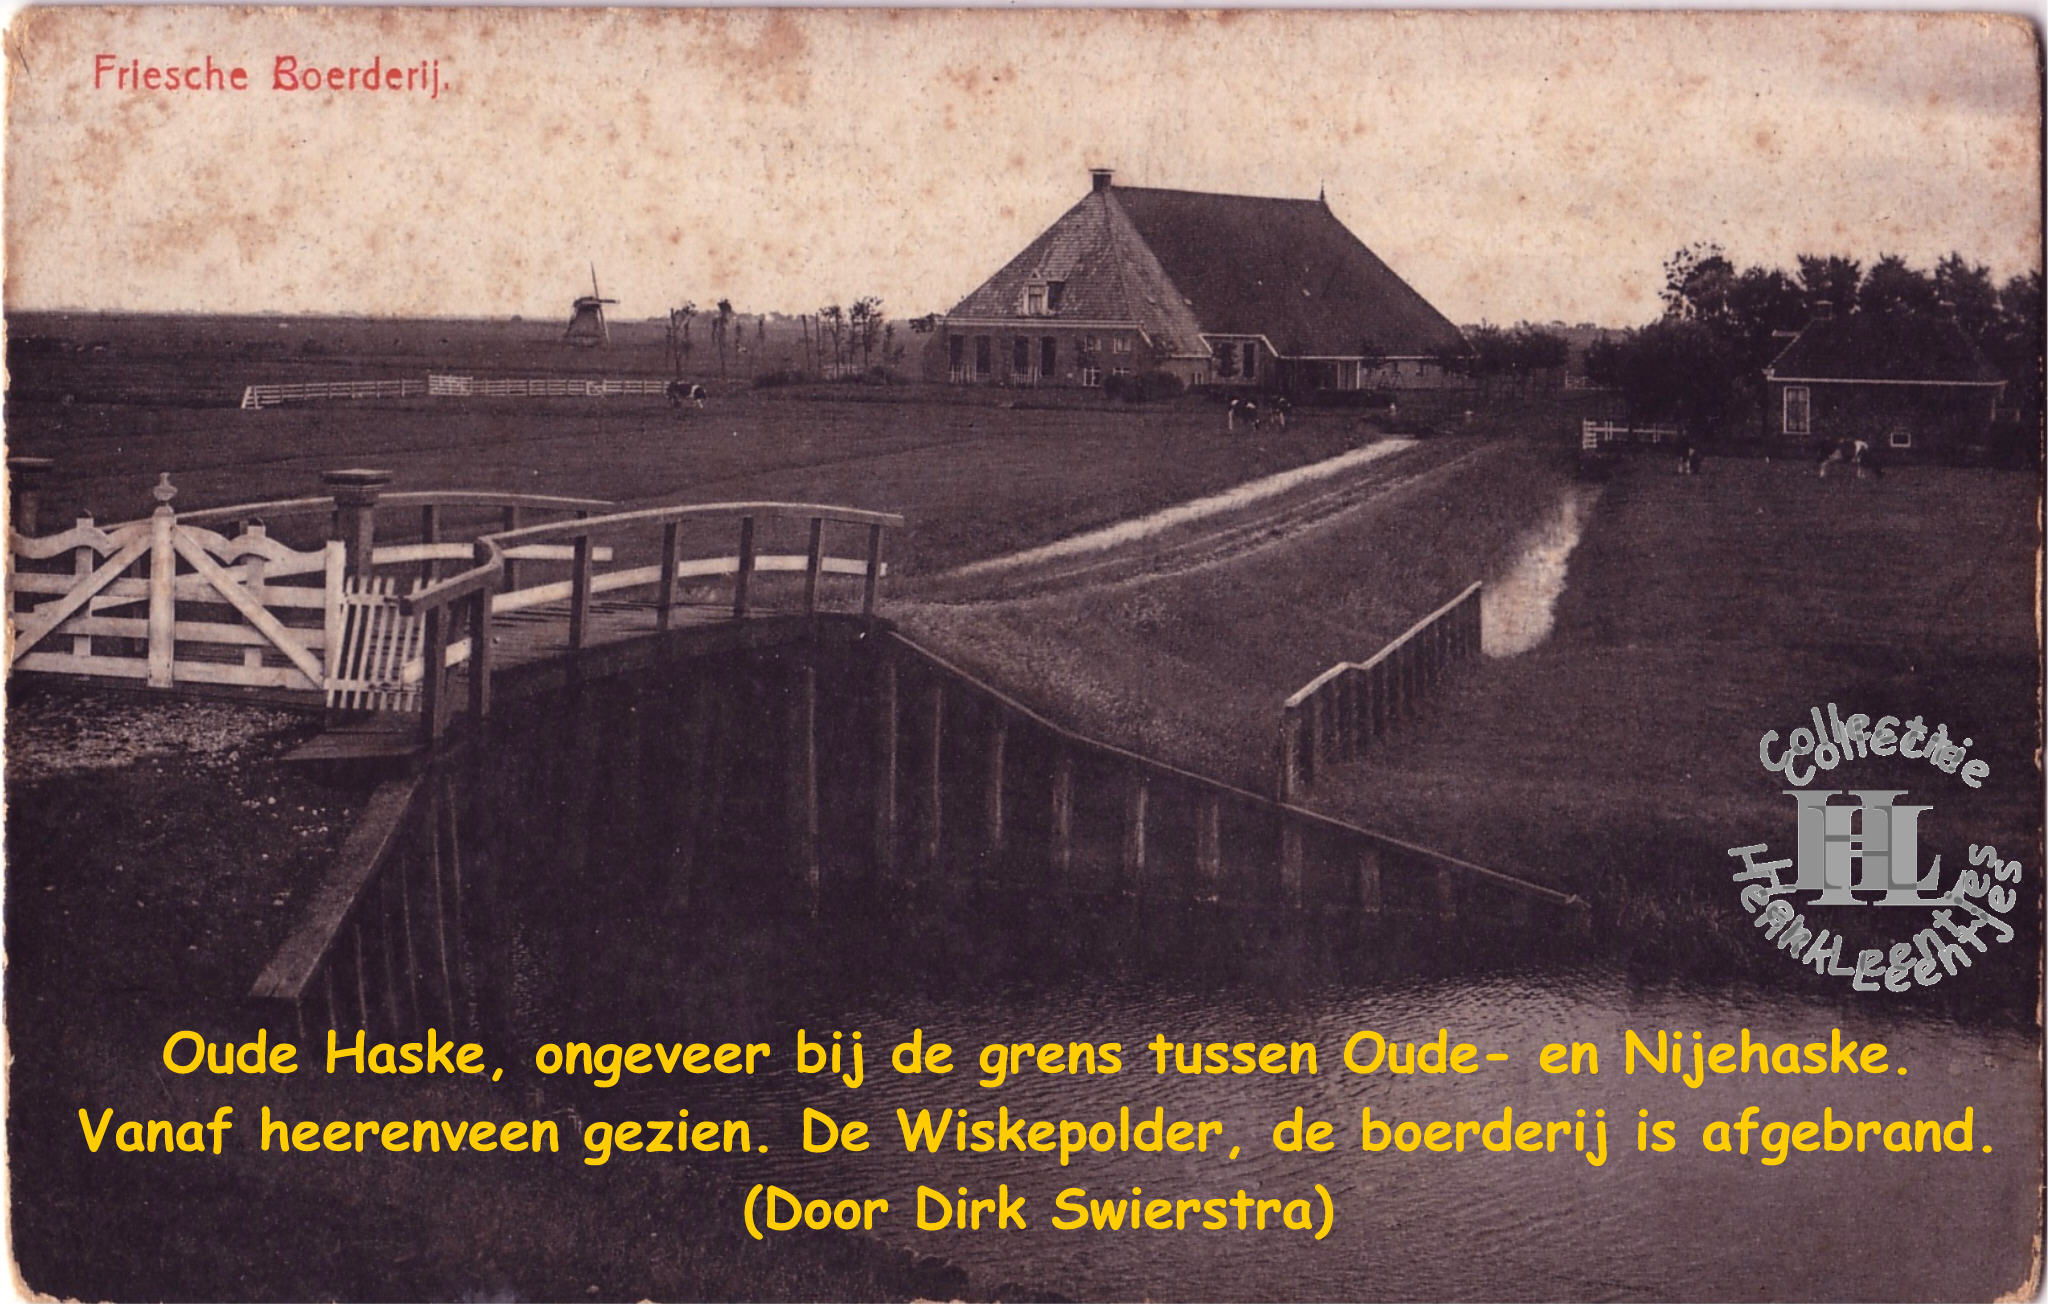 Boerderij (afgebrand) De Wiskepolder Oudehaske (Op de grens tussen Oude- en Nijehaske (Door: Dirk Swierstra)